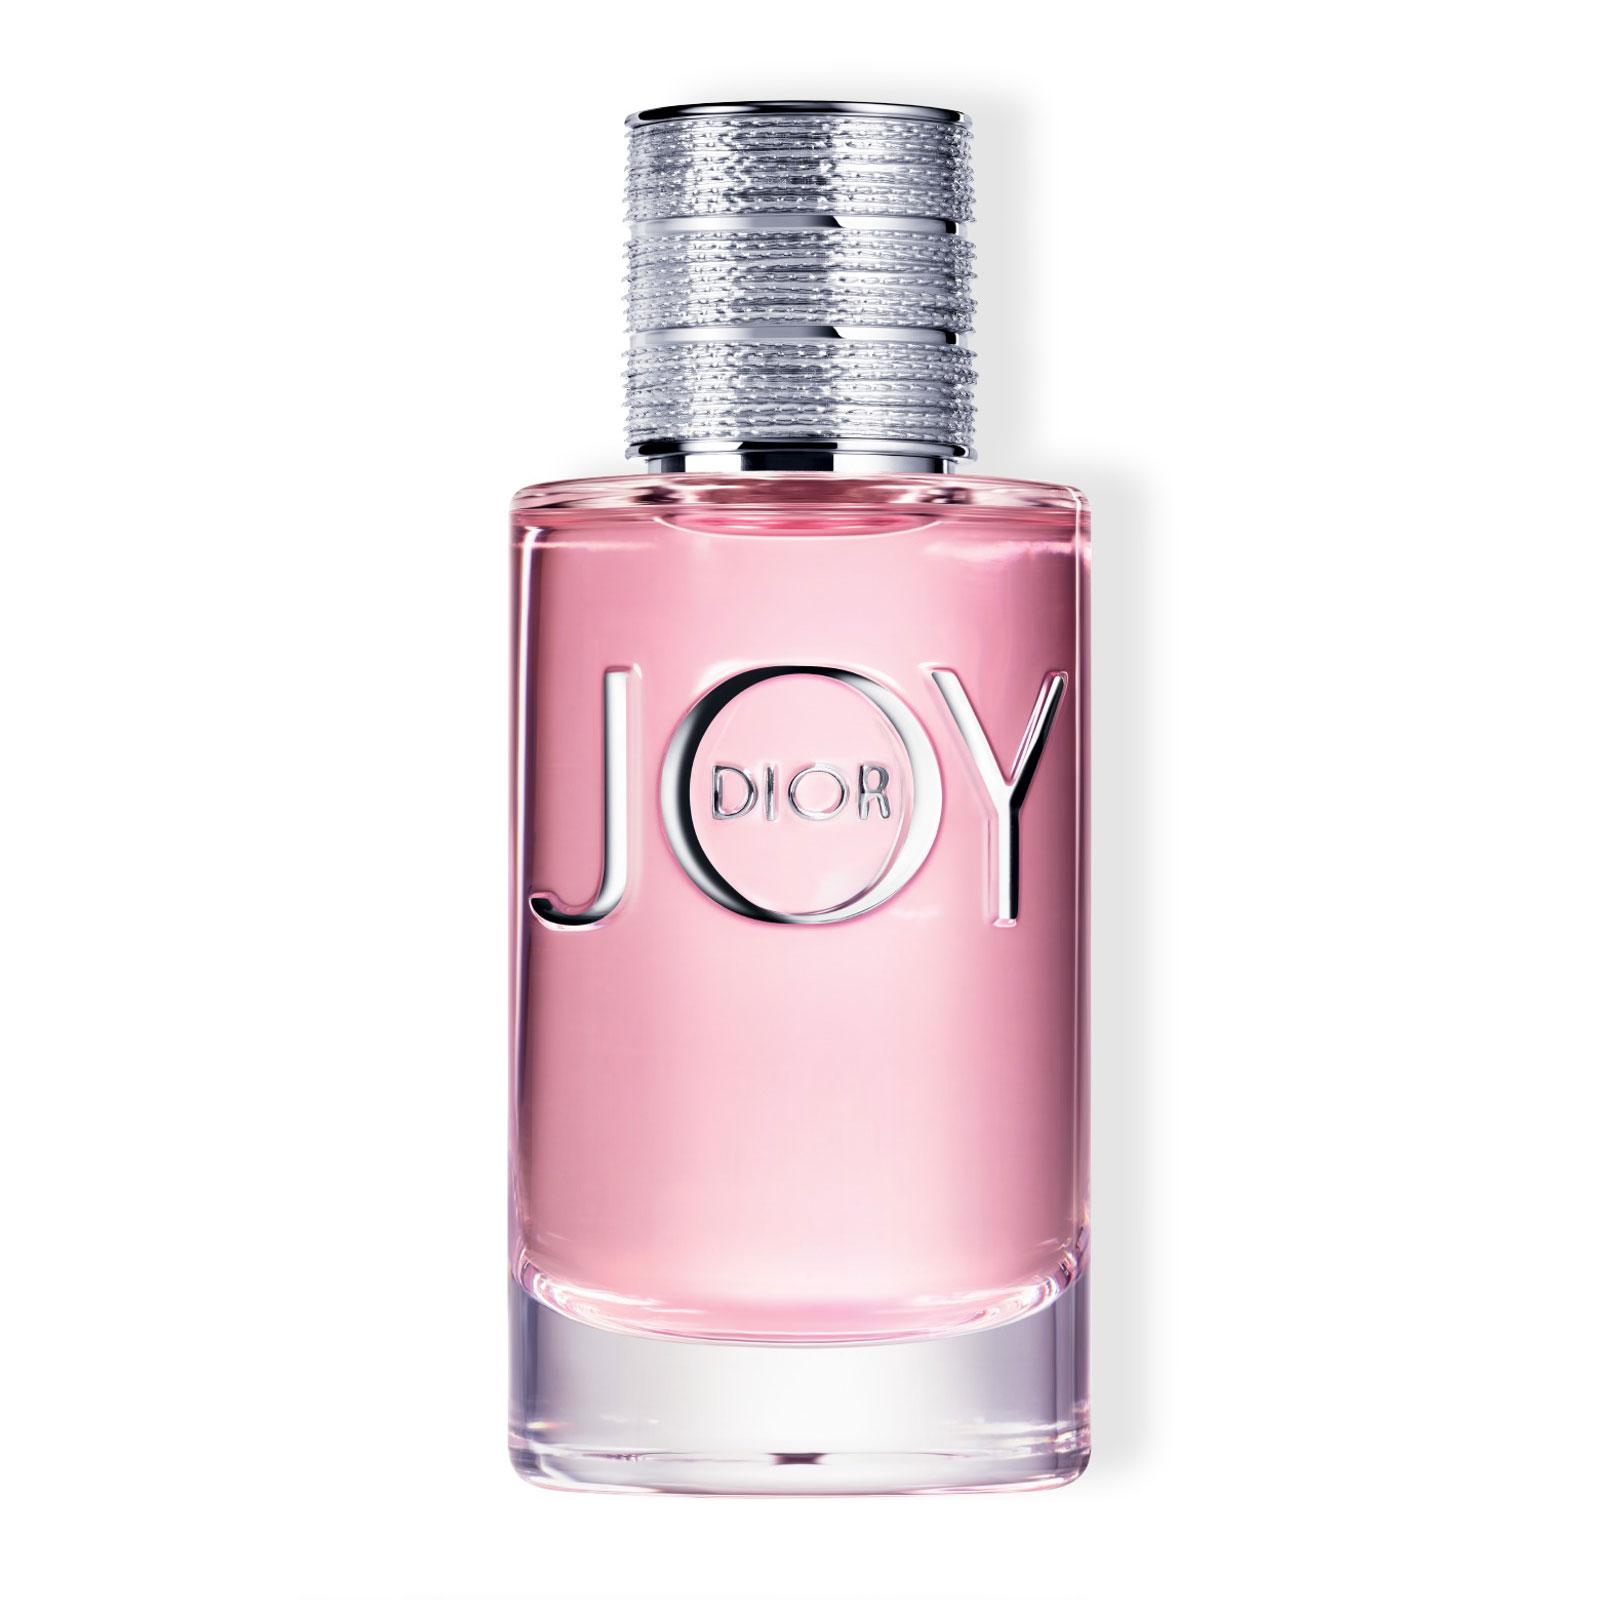 DIOR JOY by Dior Eau de Parfum 50ml - Feelunique